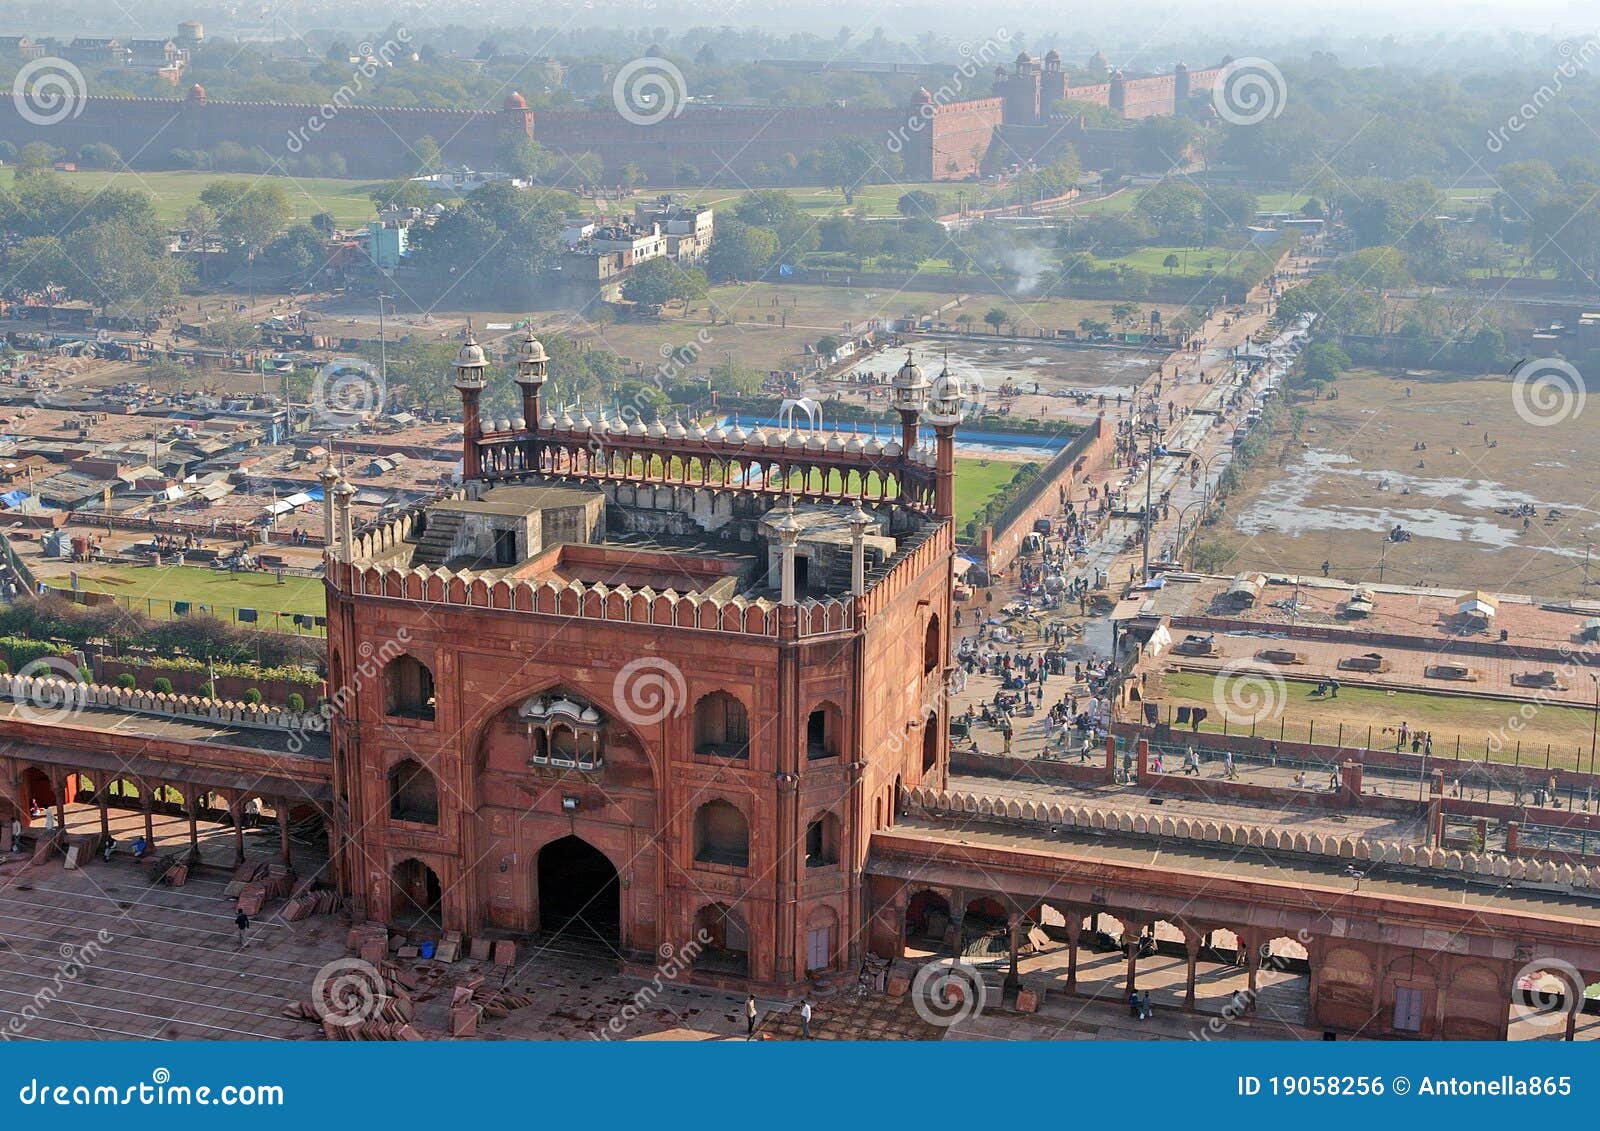 jama masjid and red fort at delhi